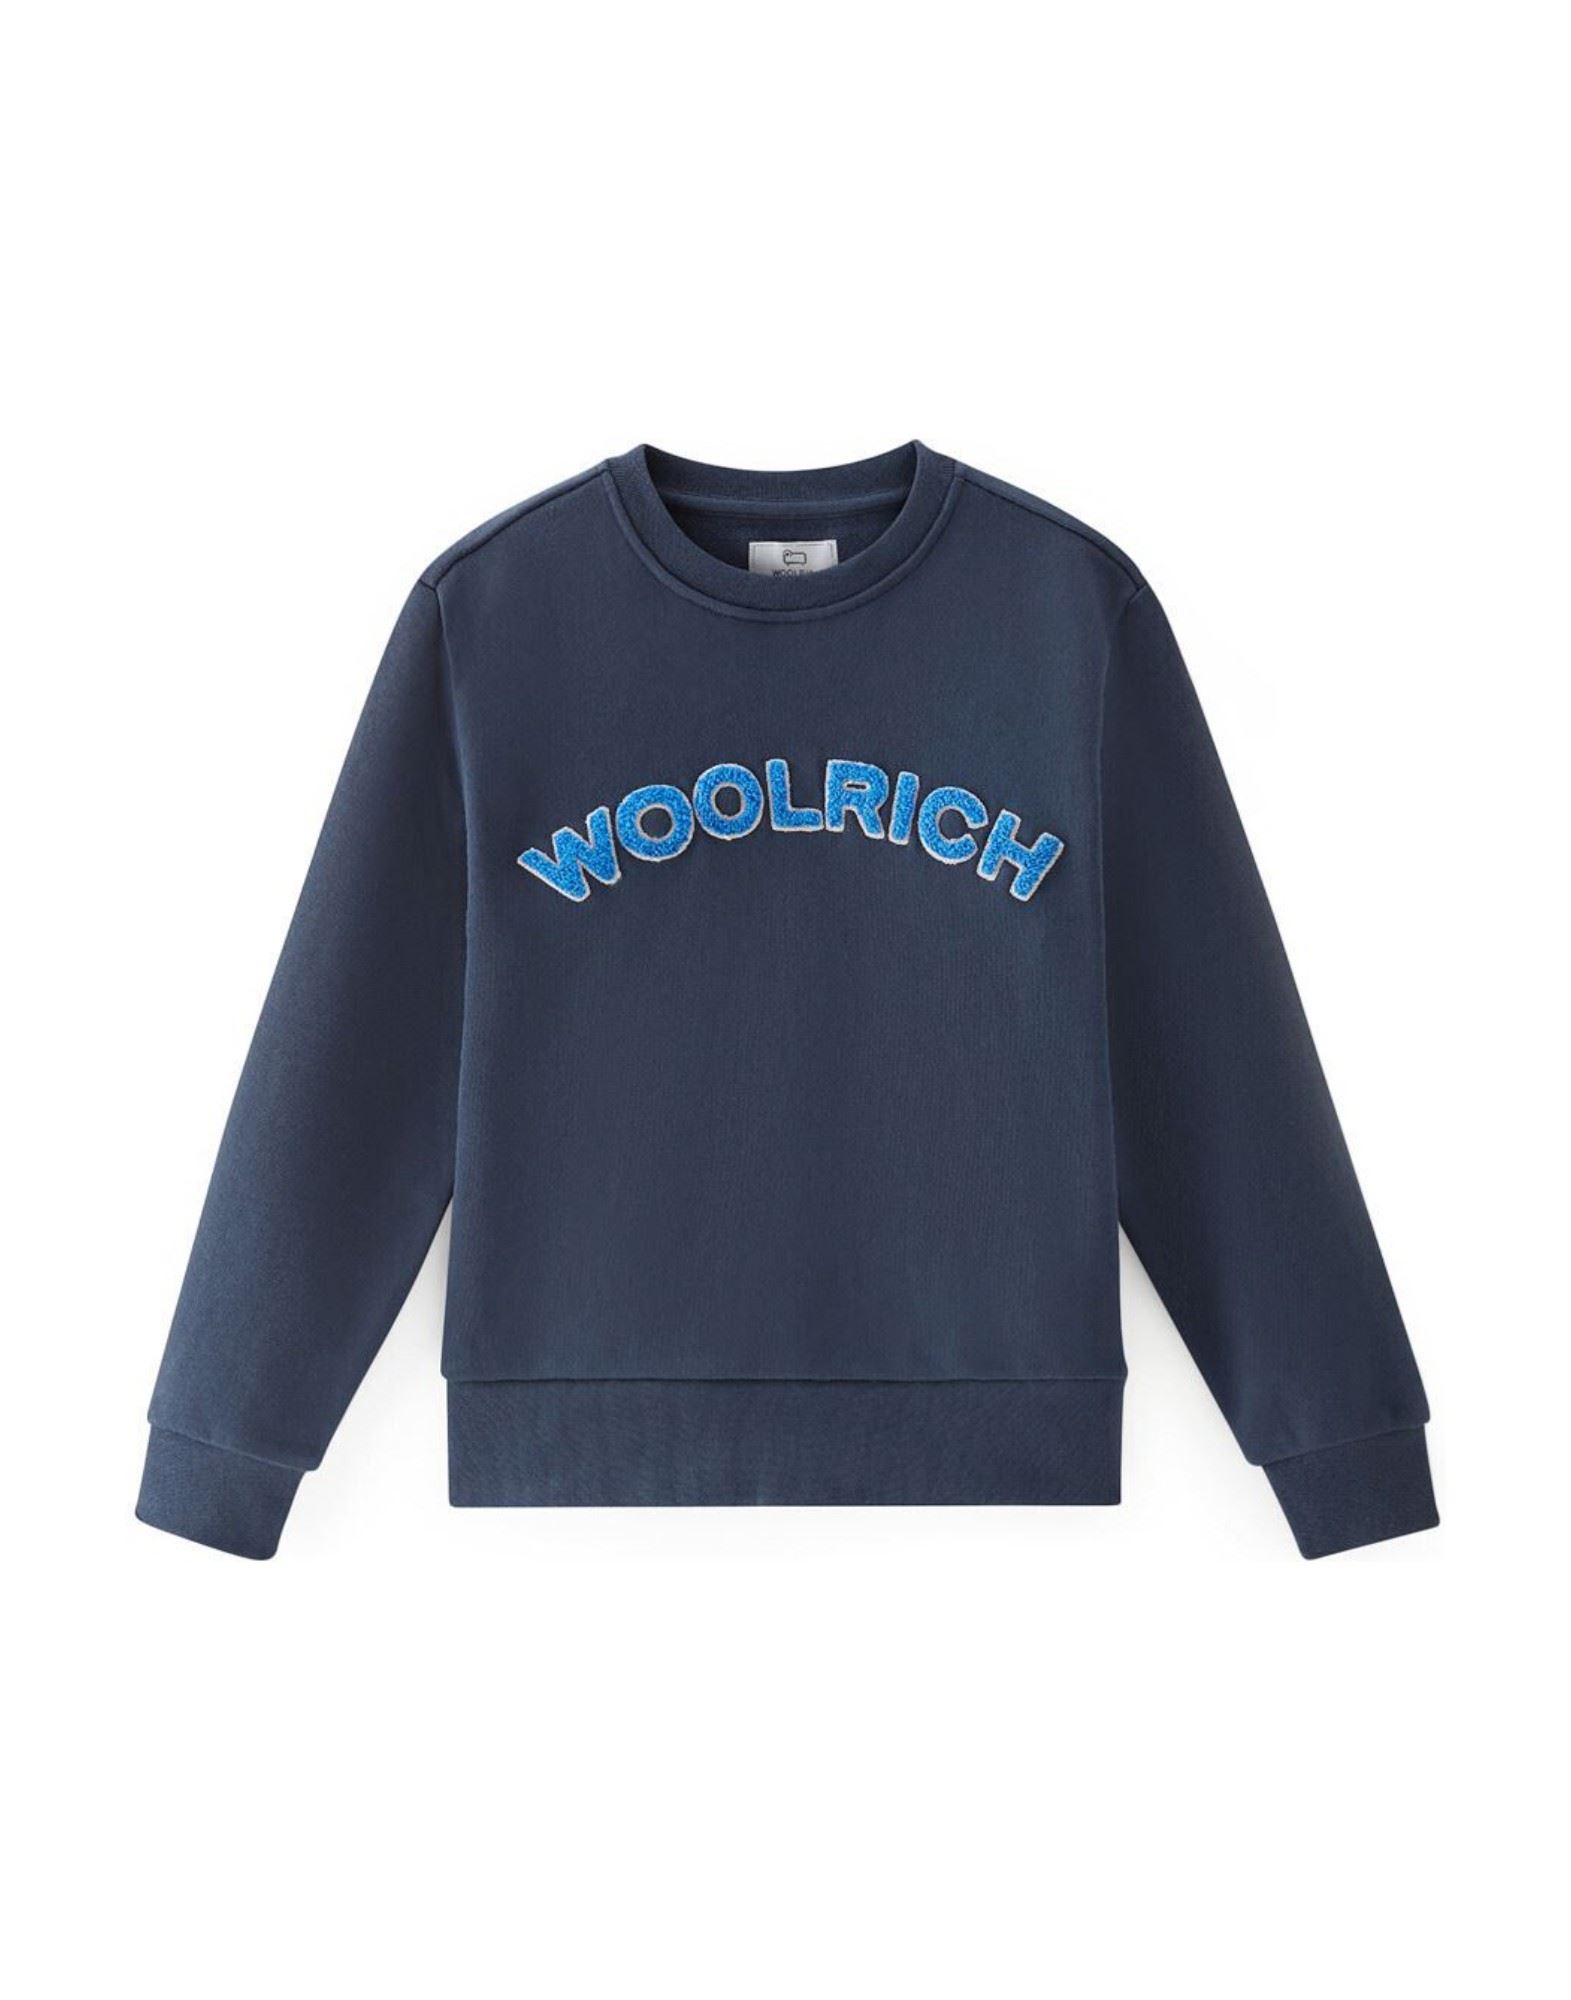 WOOLRICH Sweatshirt Kinder Blau von WOOLRICH